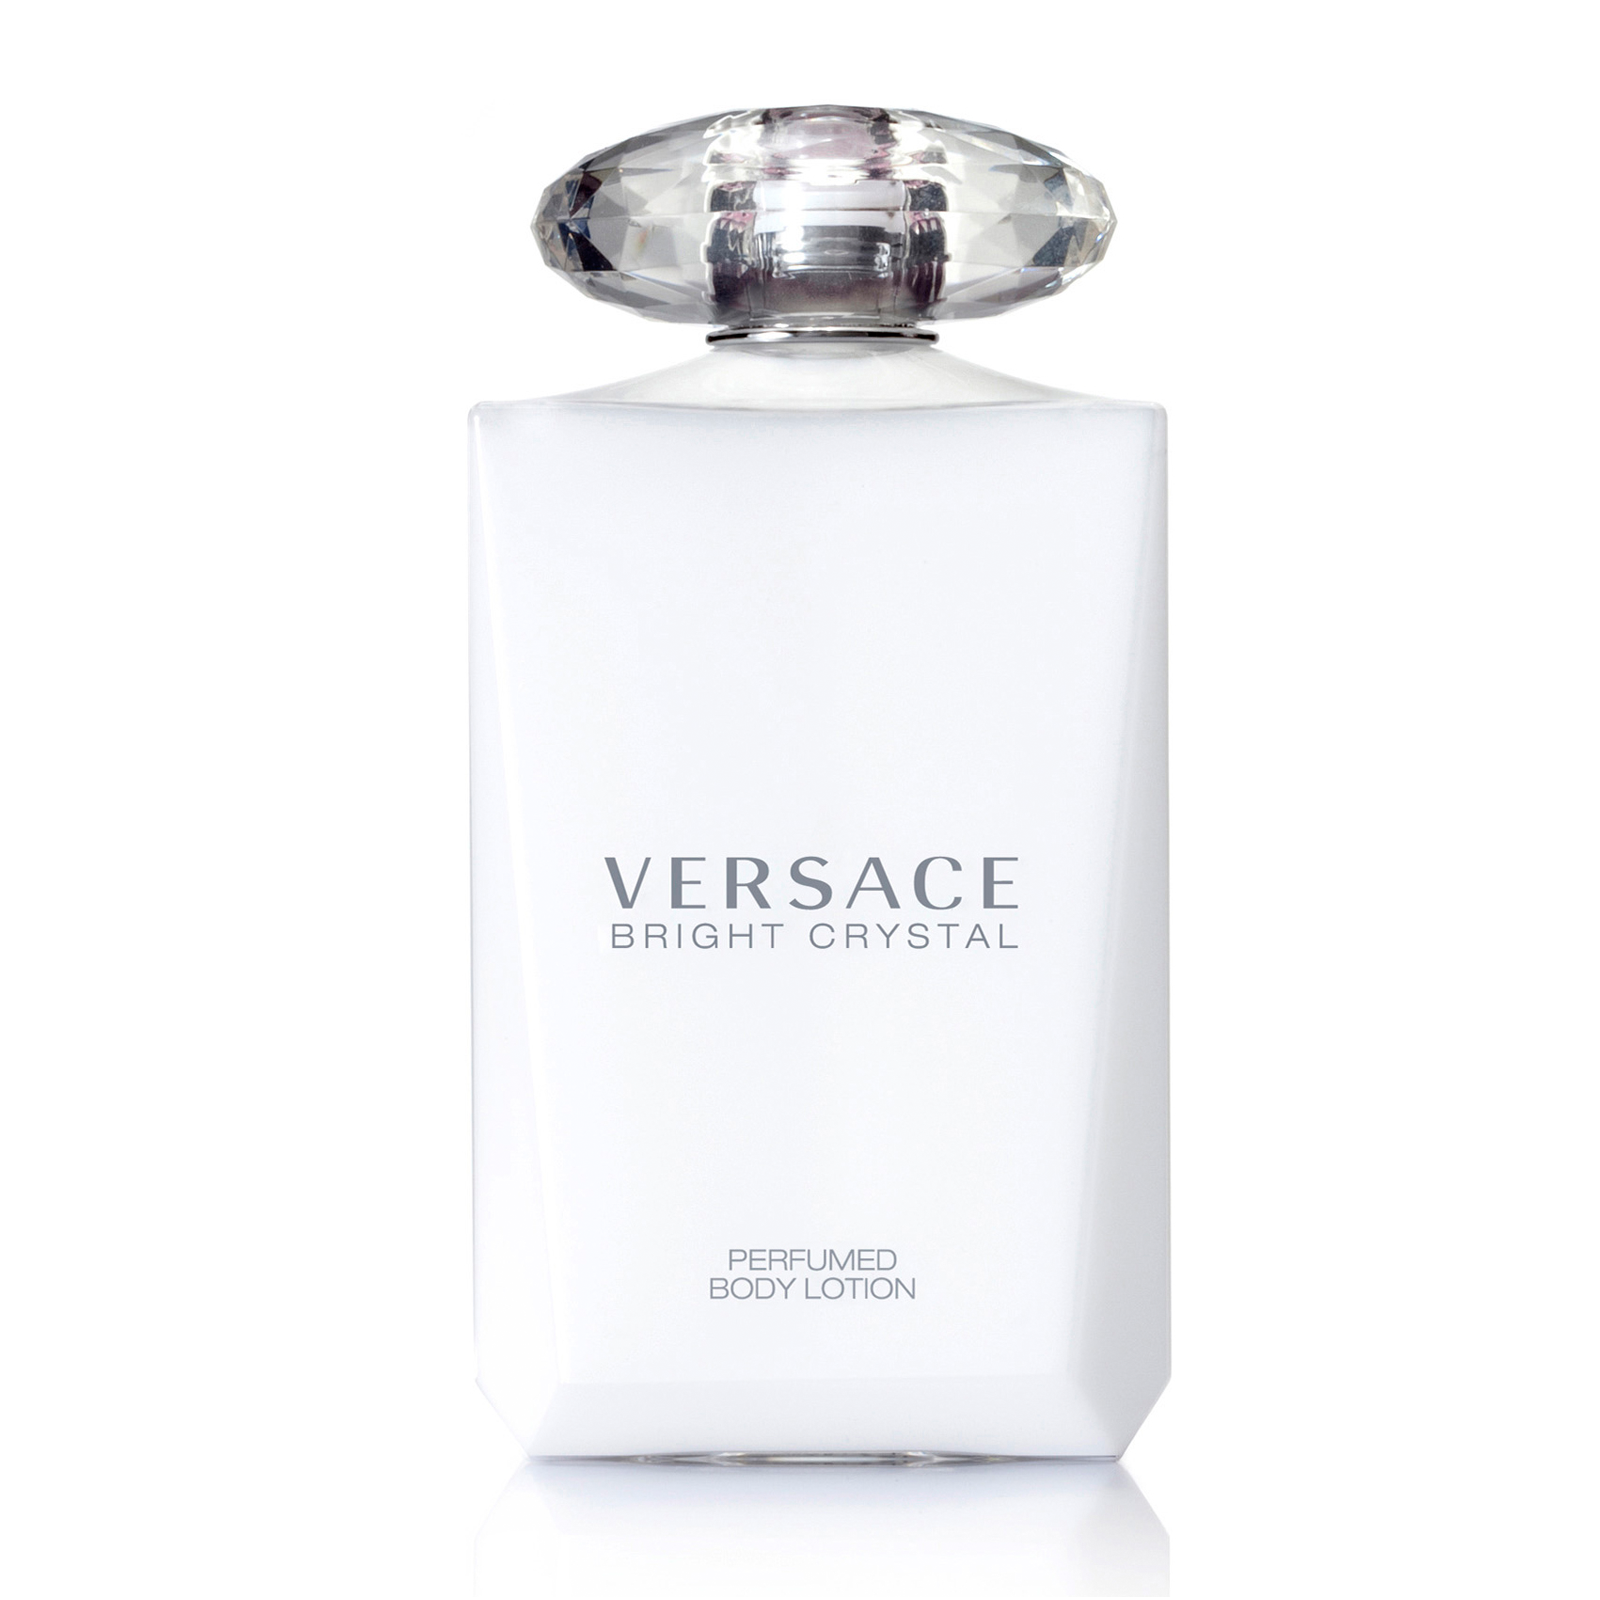 Sữa Dưỡng Thể Versace Bright Crystal Perfumed Body Lotion 200ml nổi bật hương nước hoa cao cấp hương Hoa Mẫu Đơn Quả Lựu